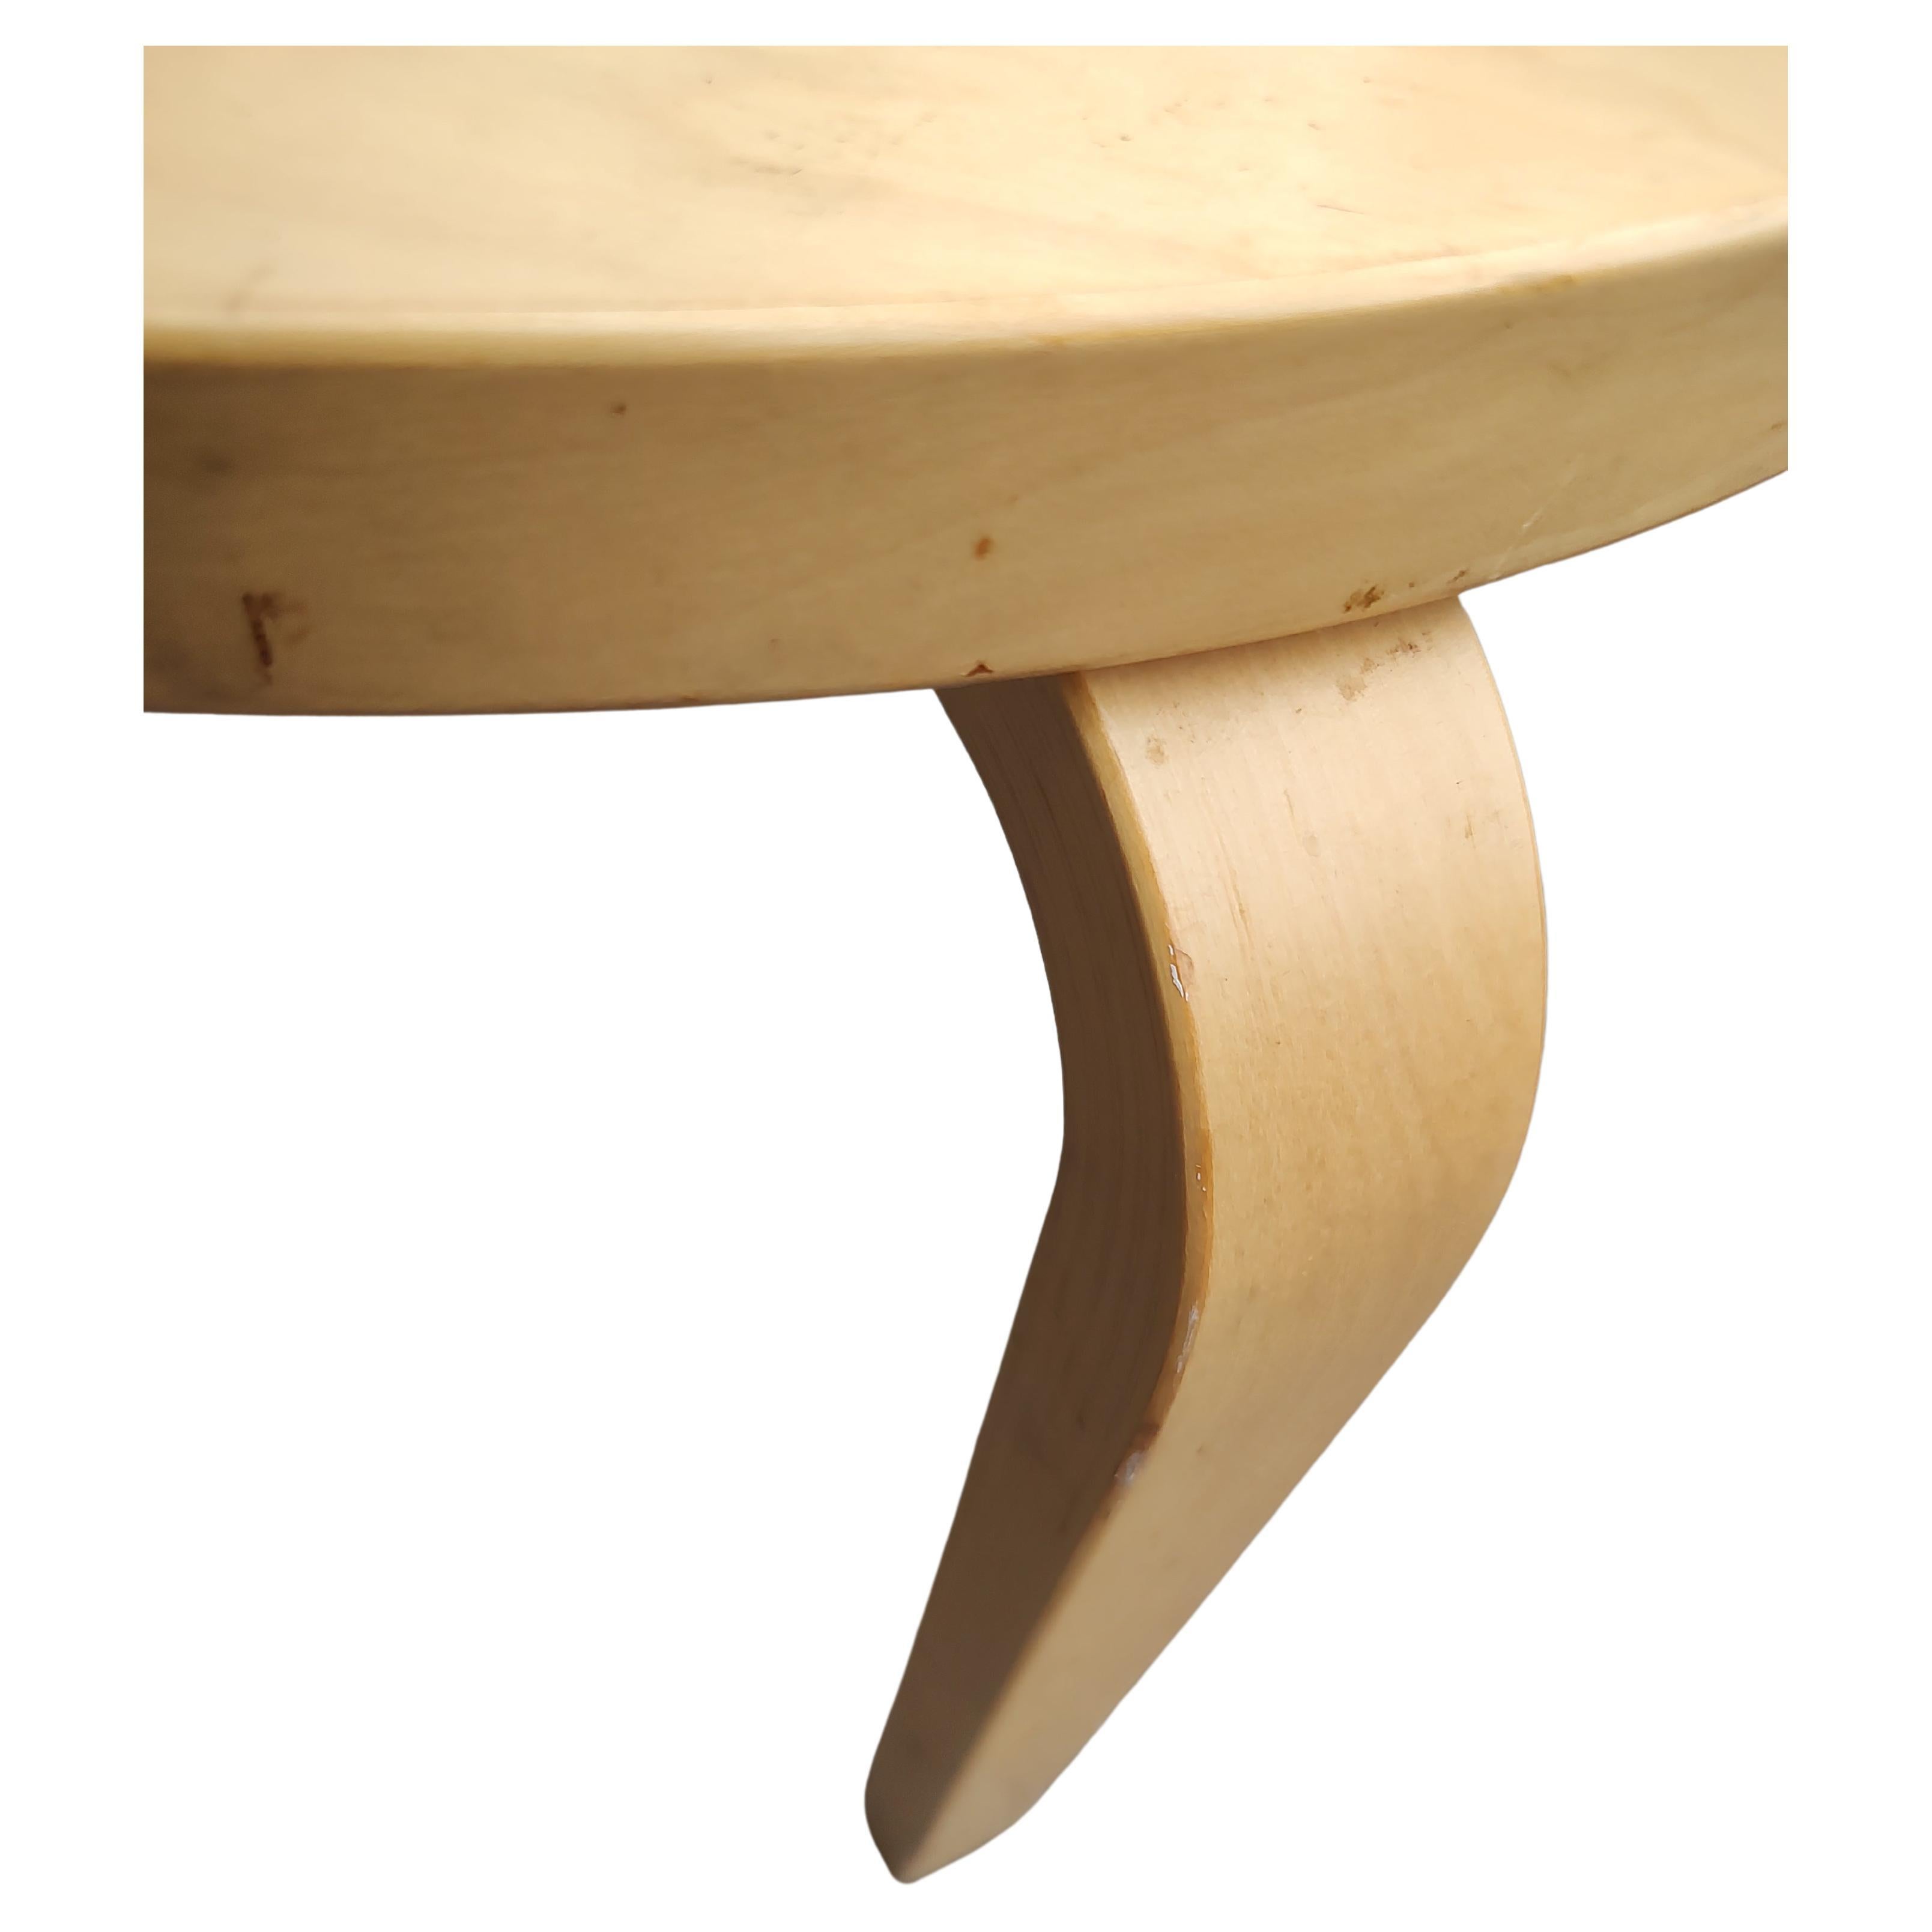 Schlichtes, aber elegantes Design des legendären Alvar Aalto für Artek. Runder Birkenkreisel mit einem Durchmesser von 19 und einer Höhe von 17,5 cm - eine gute Größe für die Verwendung an verschiedenen Orten. In sehr gutem Zustand mit minimalen